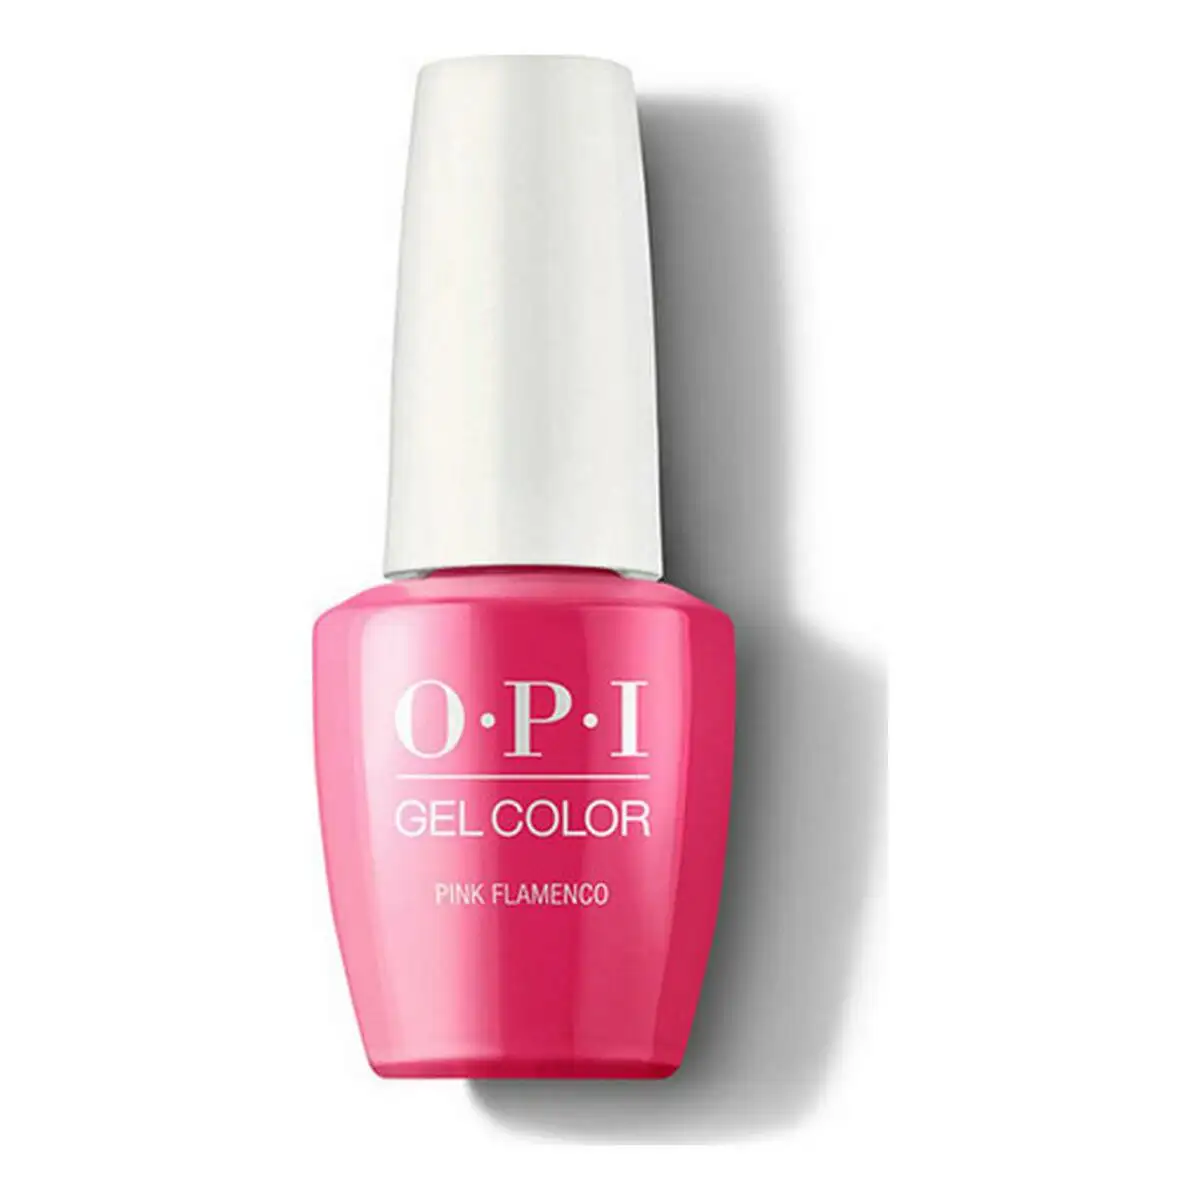 Vernis a ongles pink flamenco opi rose 15 ml _7881. DIAYTAR SENEGAL - Votre Destination Shopping pour Tous. Parcourez notre boutique en ligne et découvrez une variété de produits pour satisfaire tous vos besoins et désirs.